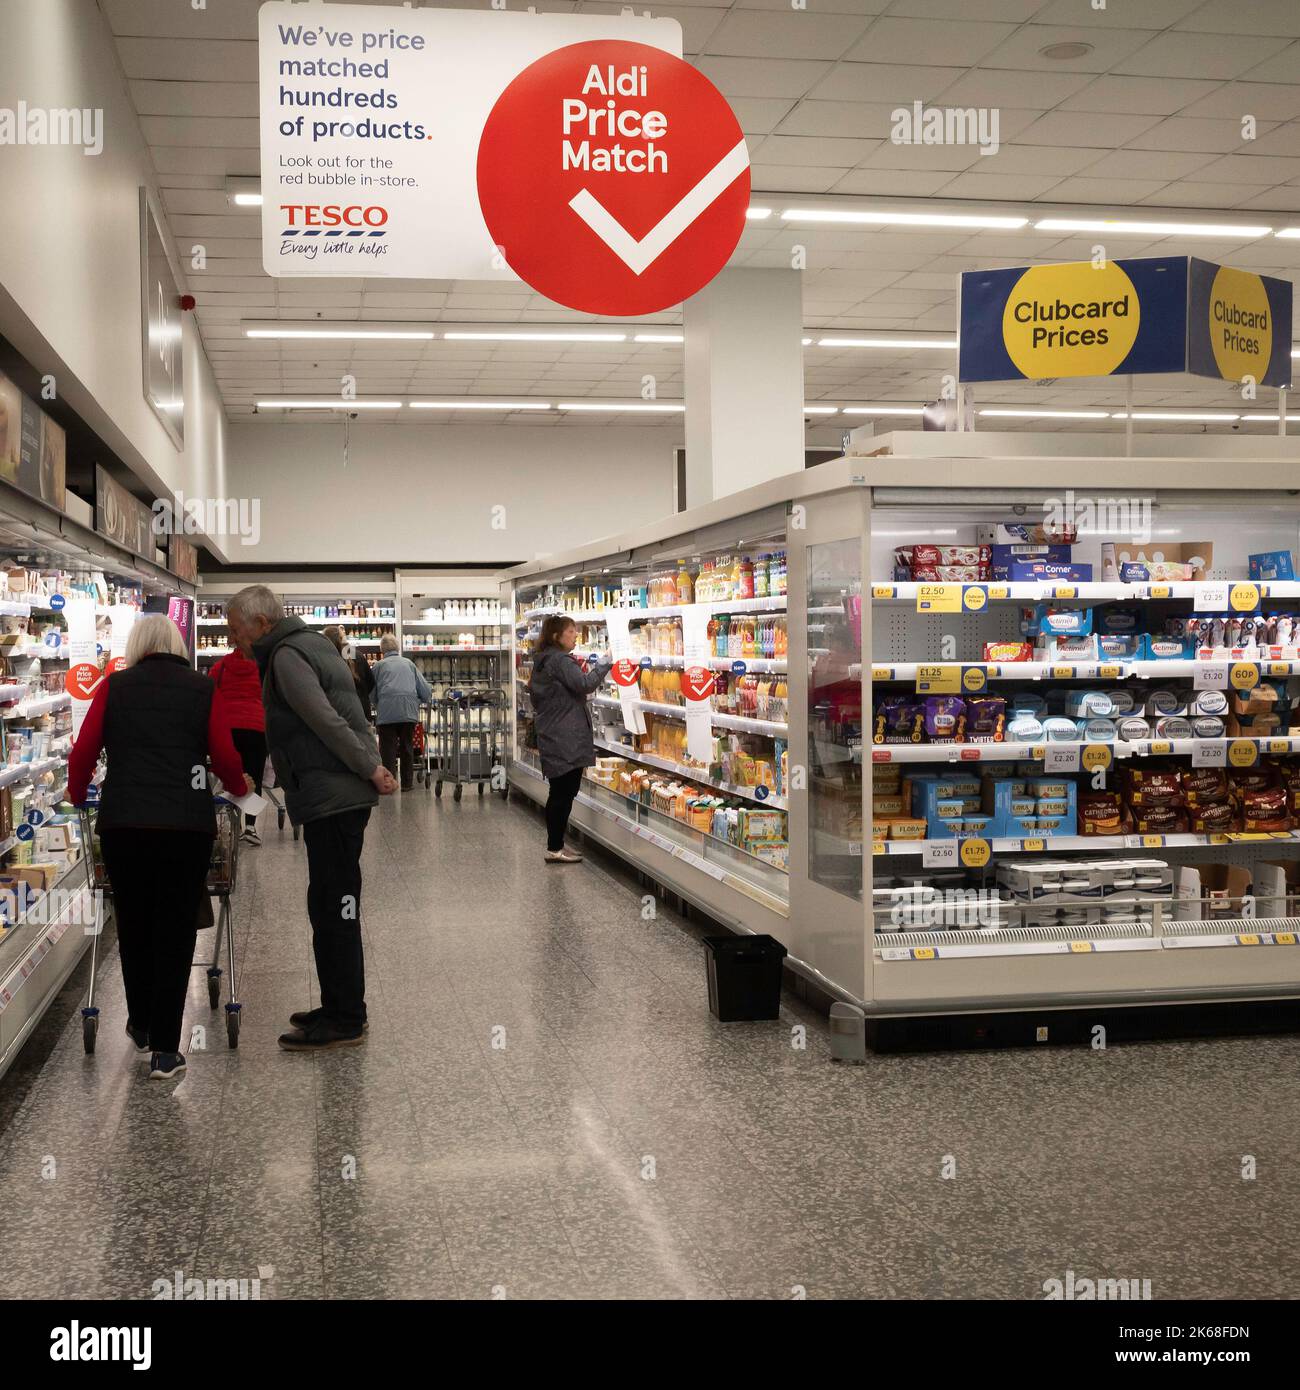 IInterieur eines Tesco Supermarktes mit markanten roten Schildern, die Aldi Price Match als Marketing-Trick behaupten, da Aldi die niedrigsten Preise auf dem Markt hat. Stockfoto